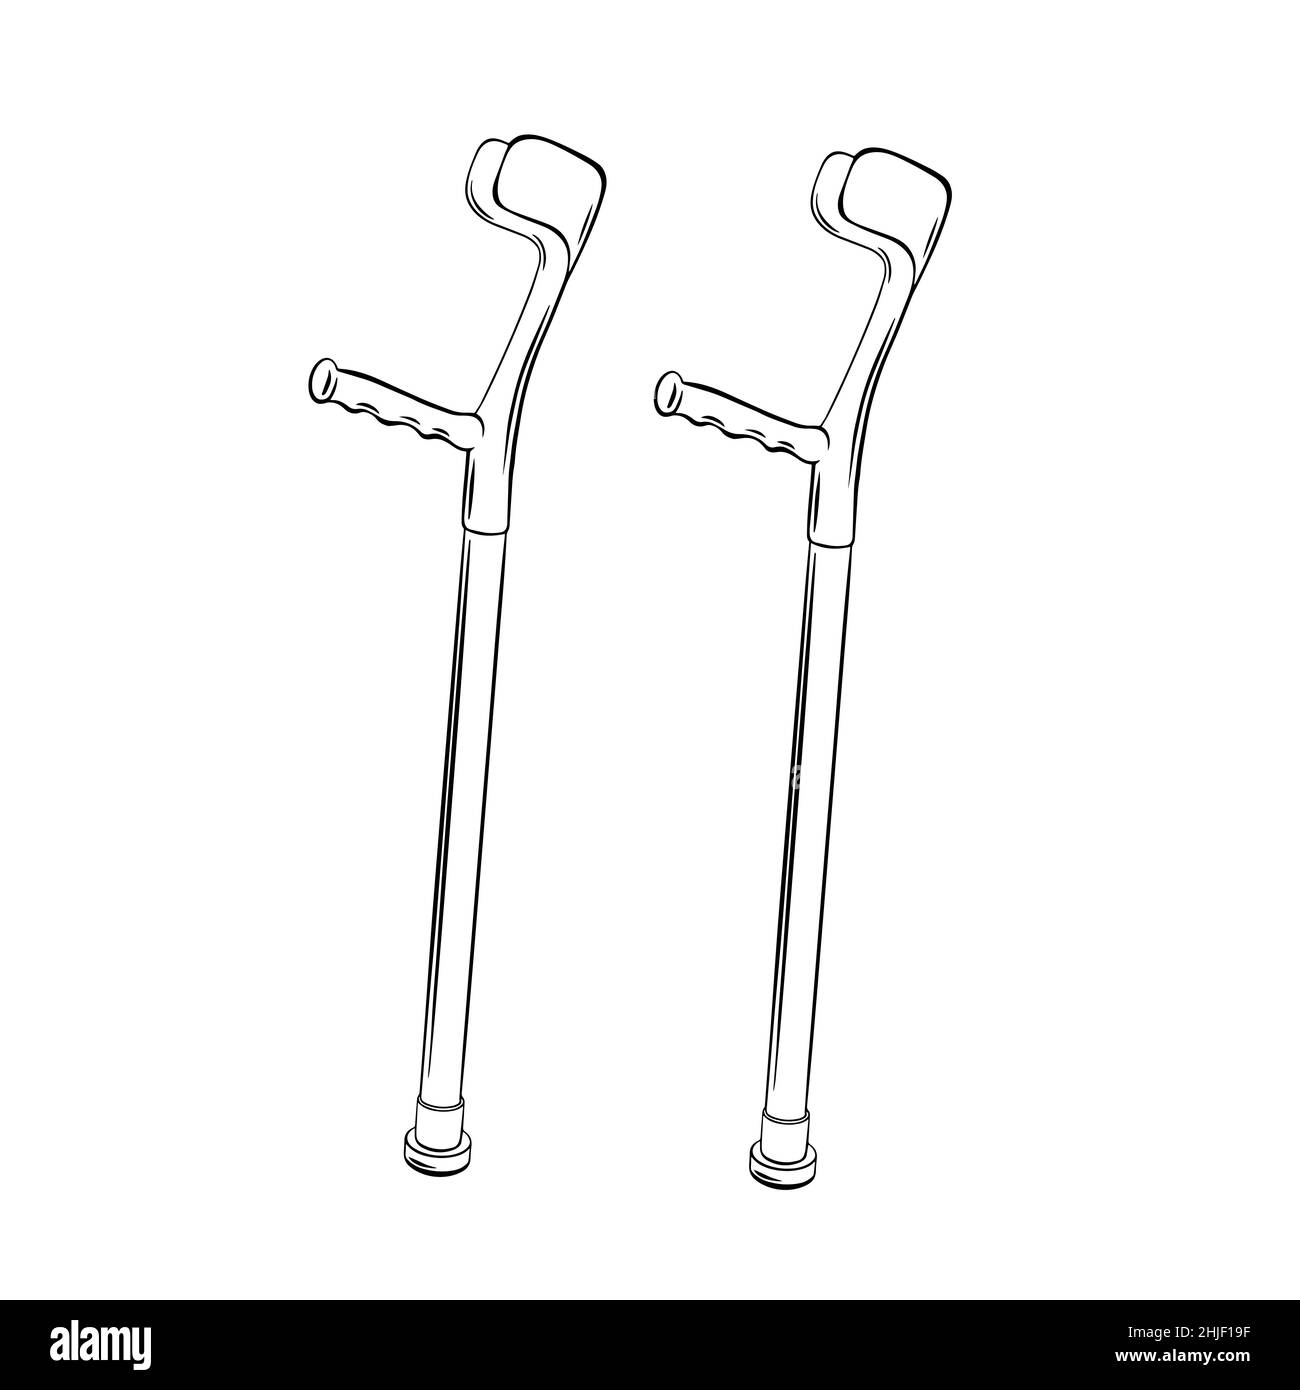 Béquilles médicales de style dessin animé, isolées sur fond  blanc.Illustration vectorielle Image Vectorielle Stock - Alamy